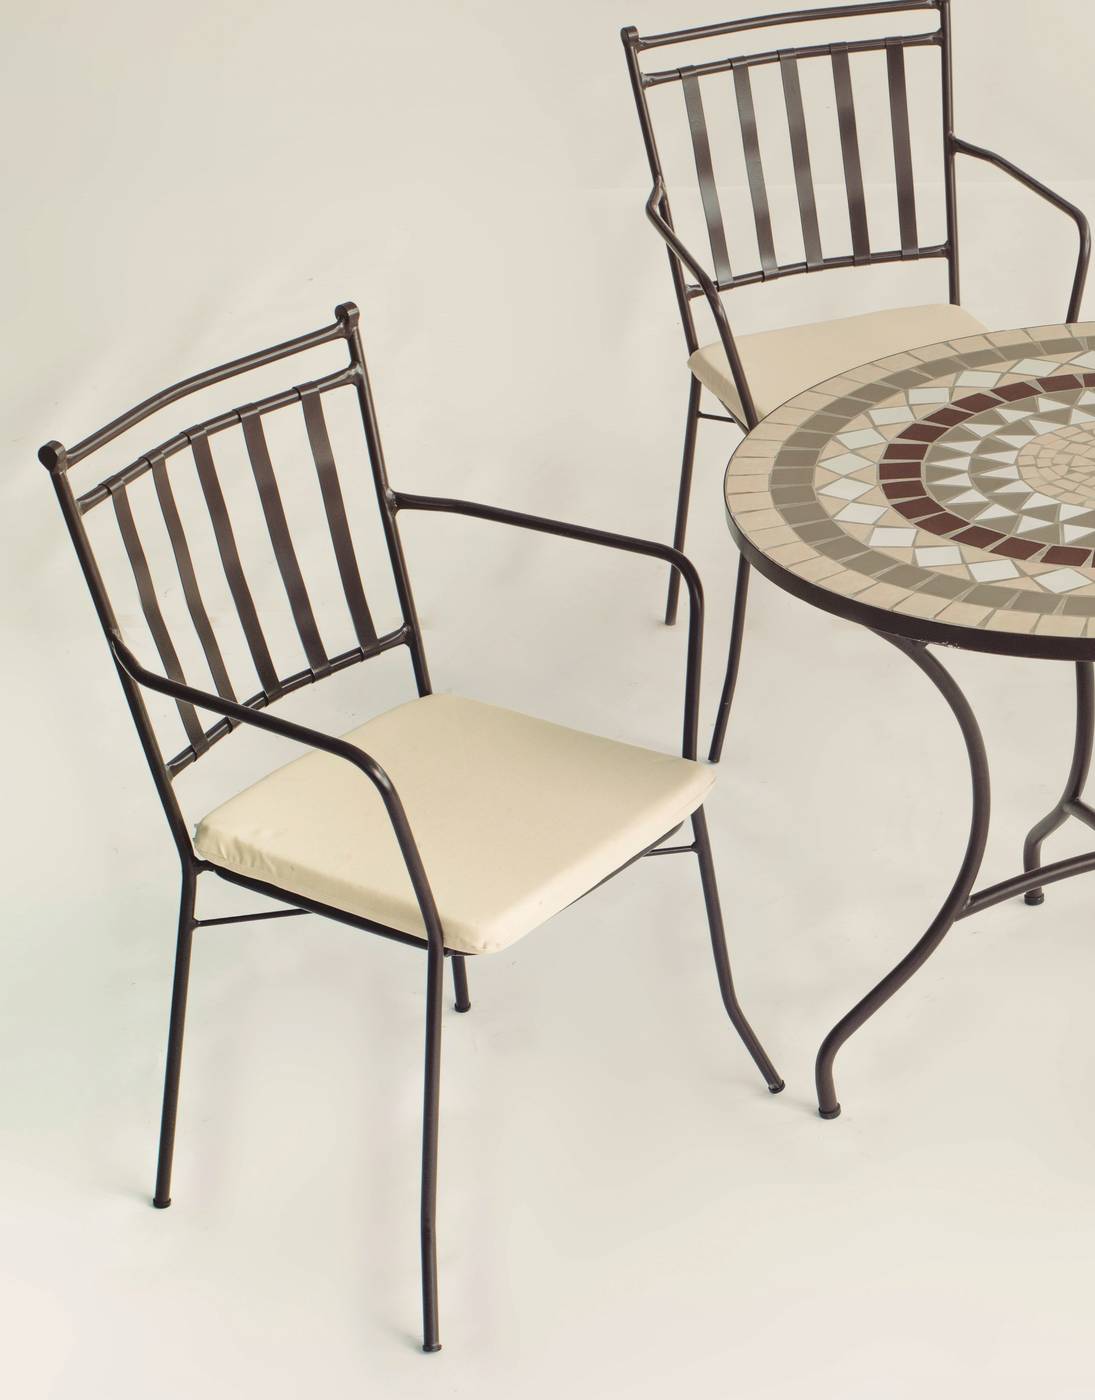 Conjunto Mosaico Laredo-Shifa - Conjunto de forja color bronce: mesa con tablero ovalado mosaico de 150 cm + 4 sillones con cojines.<br/><br/><b>OFERTA VÁLIDA HASTA EL 31 DE MAYO O FIN DE EXISTENCIAS</b>.